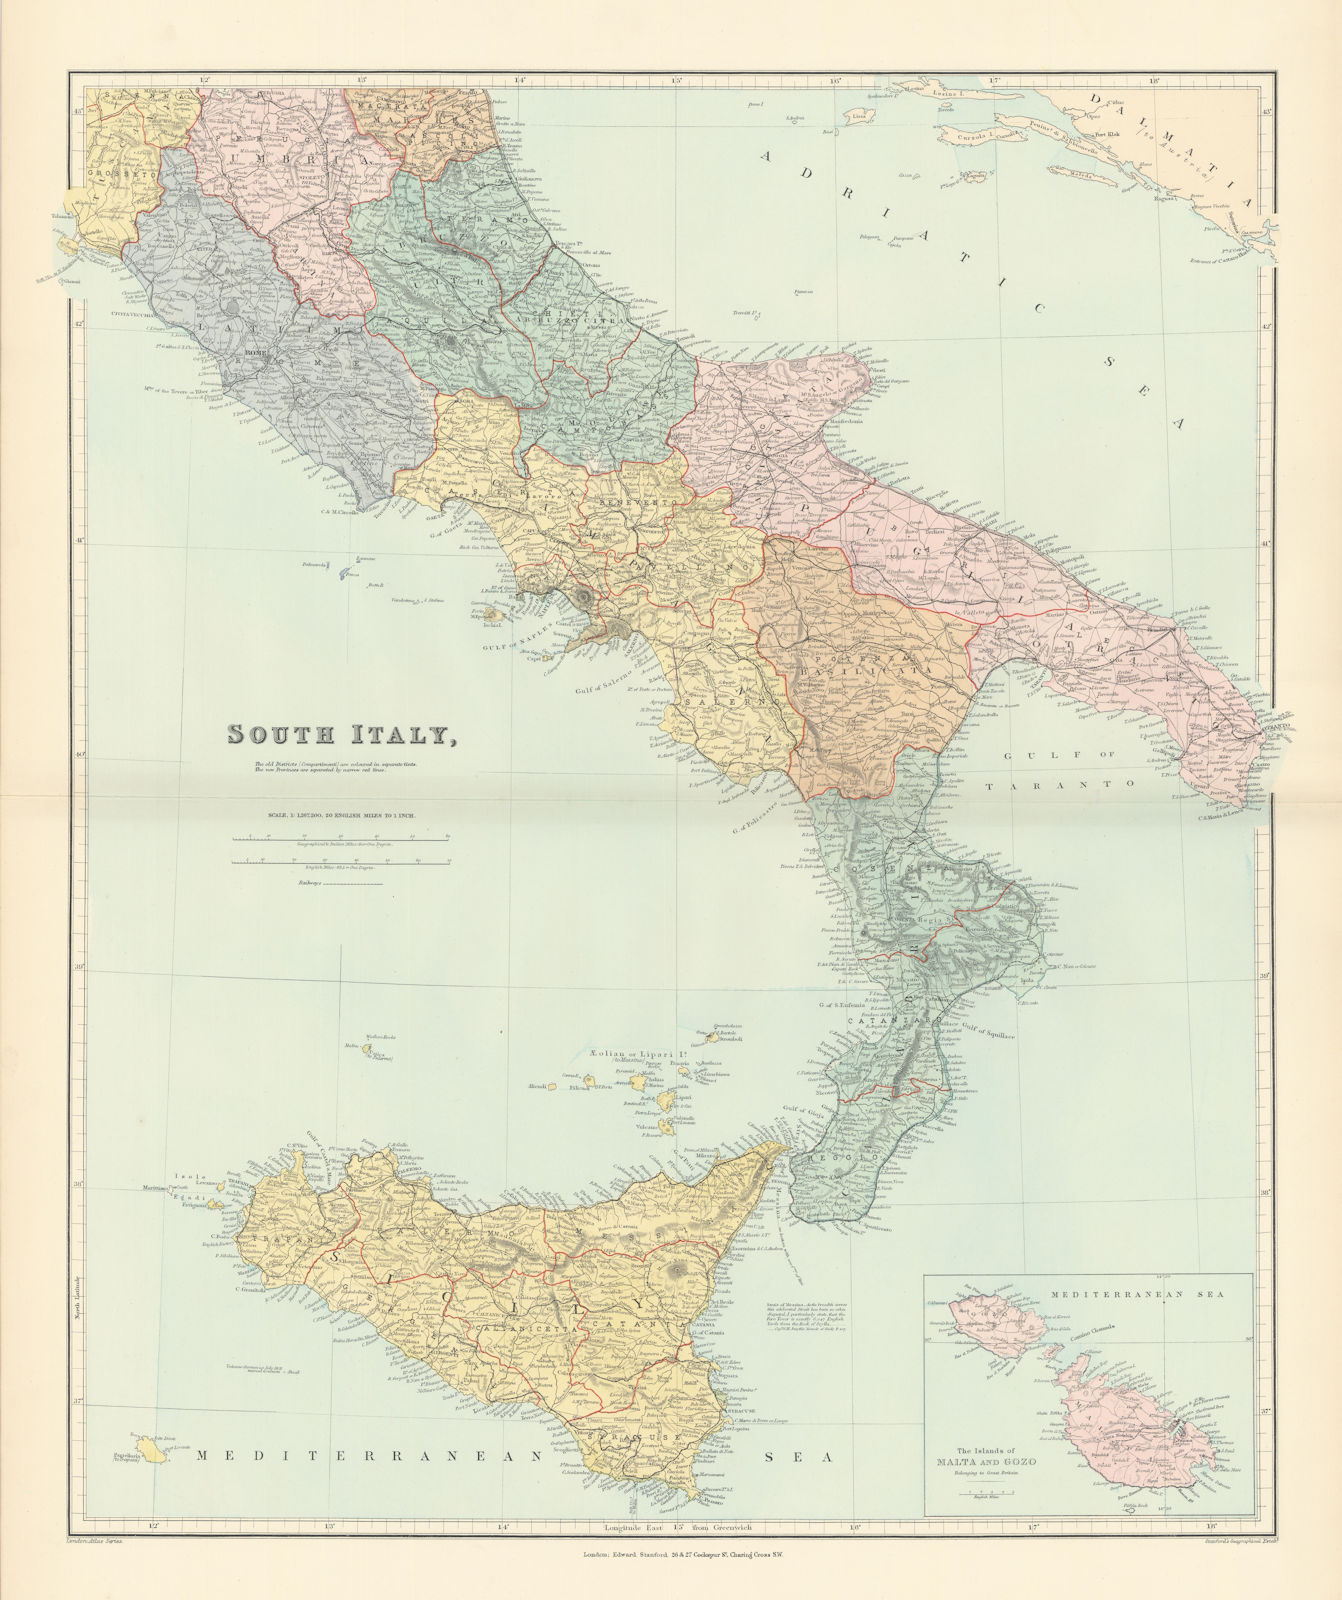 Associate Product South Italy. Sicily Calabria Puglia Abruzzo Lazio Campania. STANFORD 1896 map